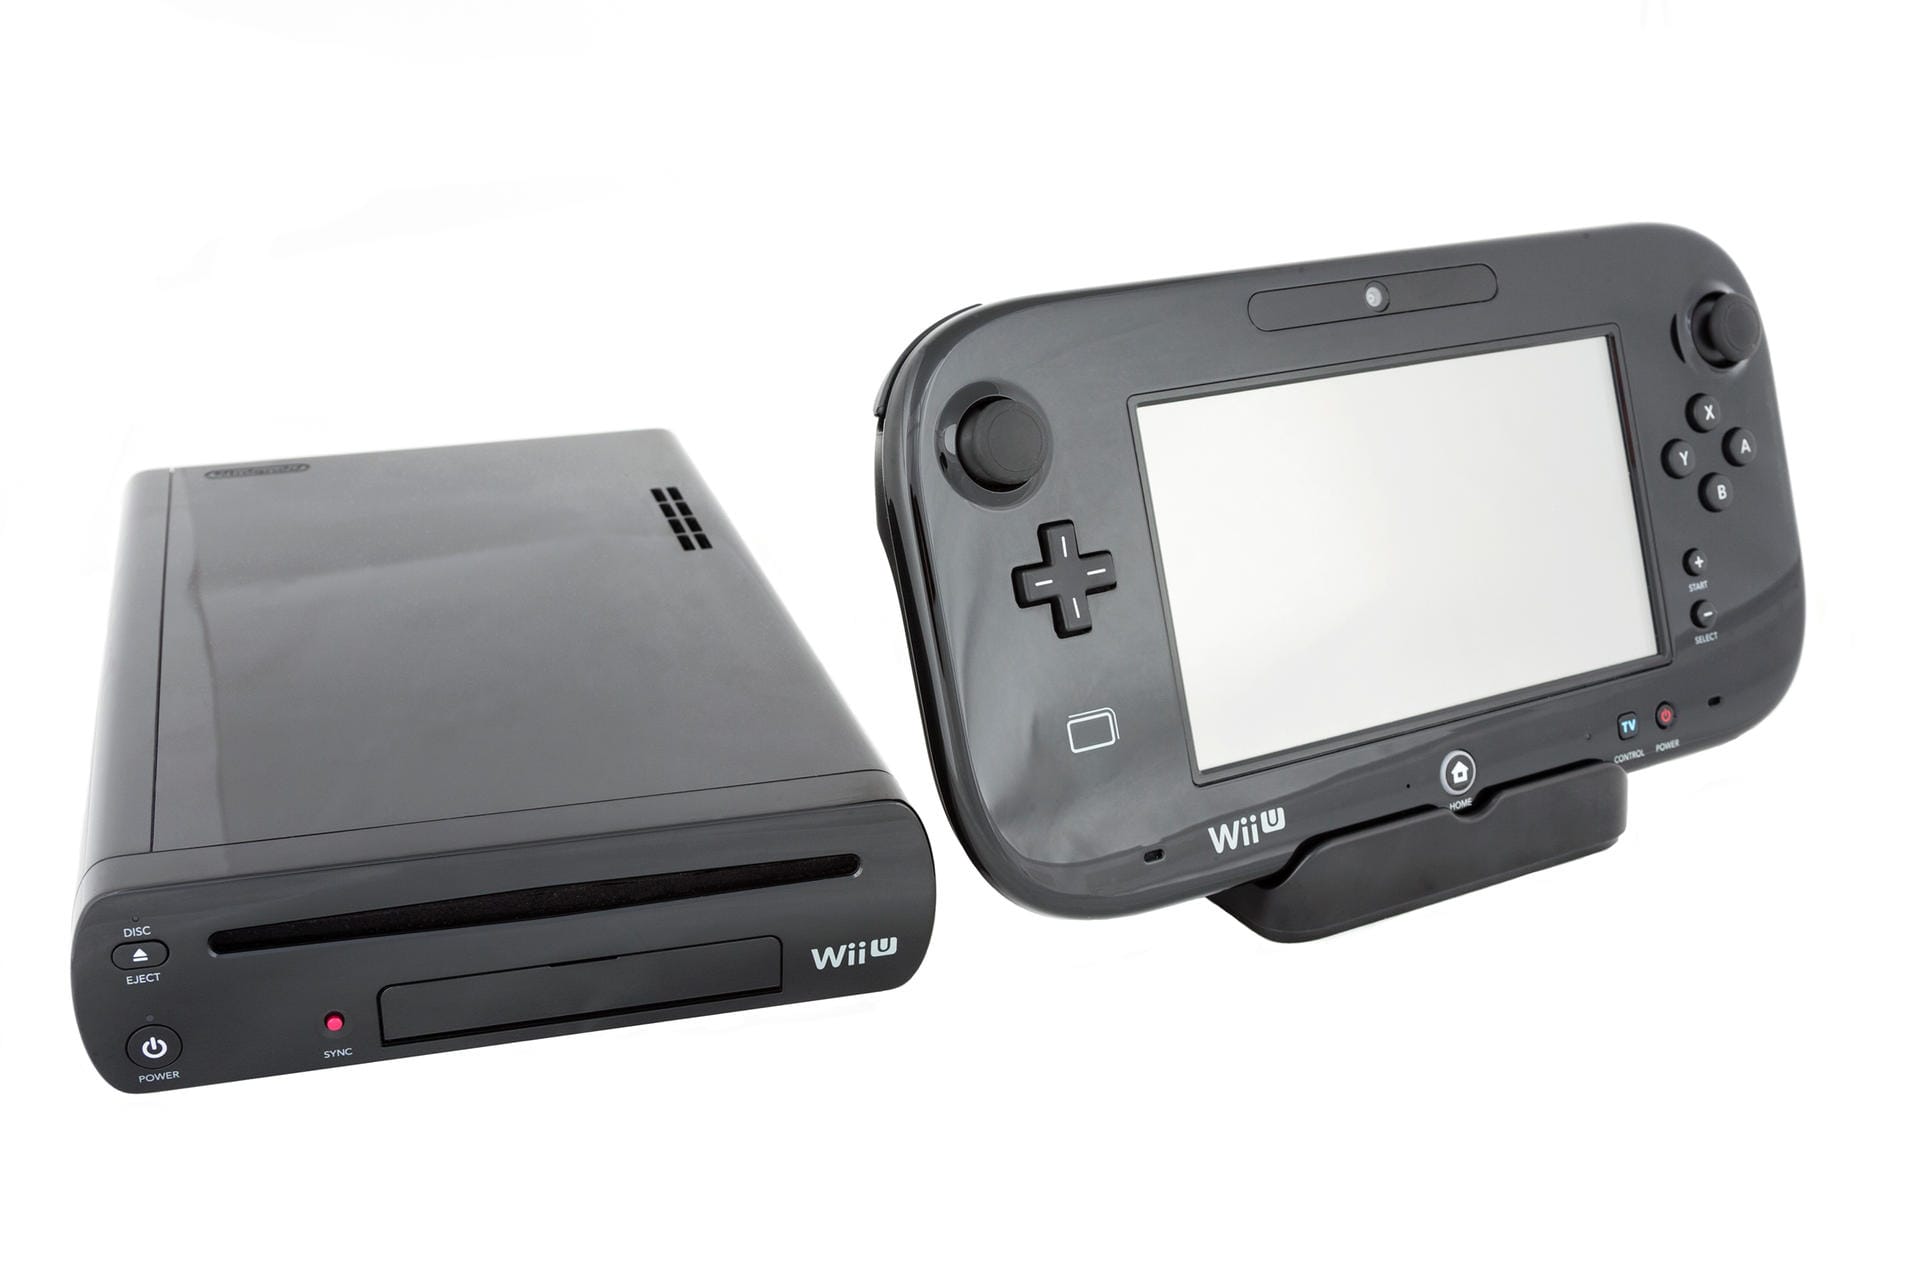 Nintendos sechste weltweit veröffentlichte Heimkonsole war die Wii U. Das Gerät bot im Vergleich zur Wii bessere Grafik. Das Besondere ist der Tablet-Controller mit Touchscreen-Funktion, der über einen zweiten Bildschirm verfügt. So lassen sich Inhalte vom Spiel auf den Controller streamen. Die Wii U verkaufte sich nur knapp 13 Millionen Mal.